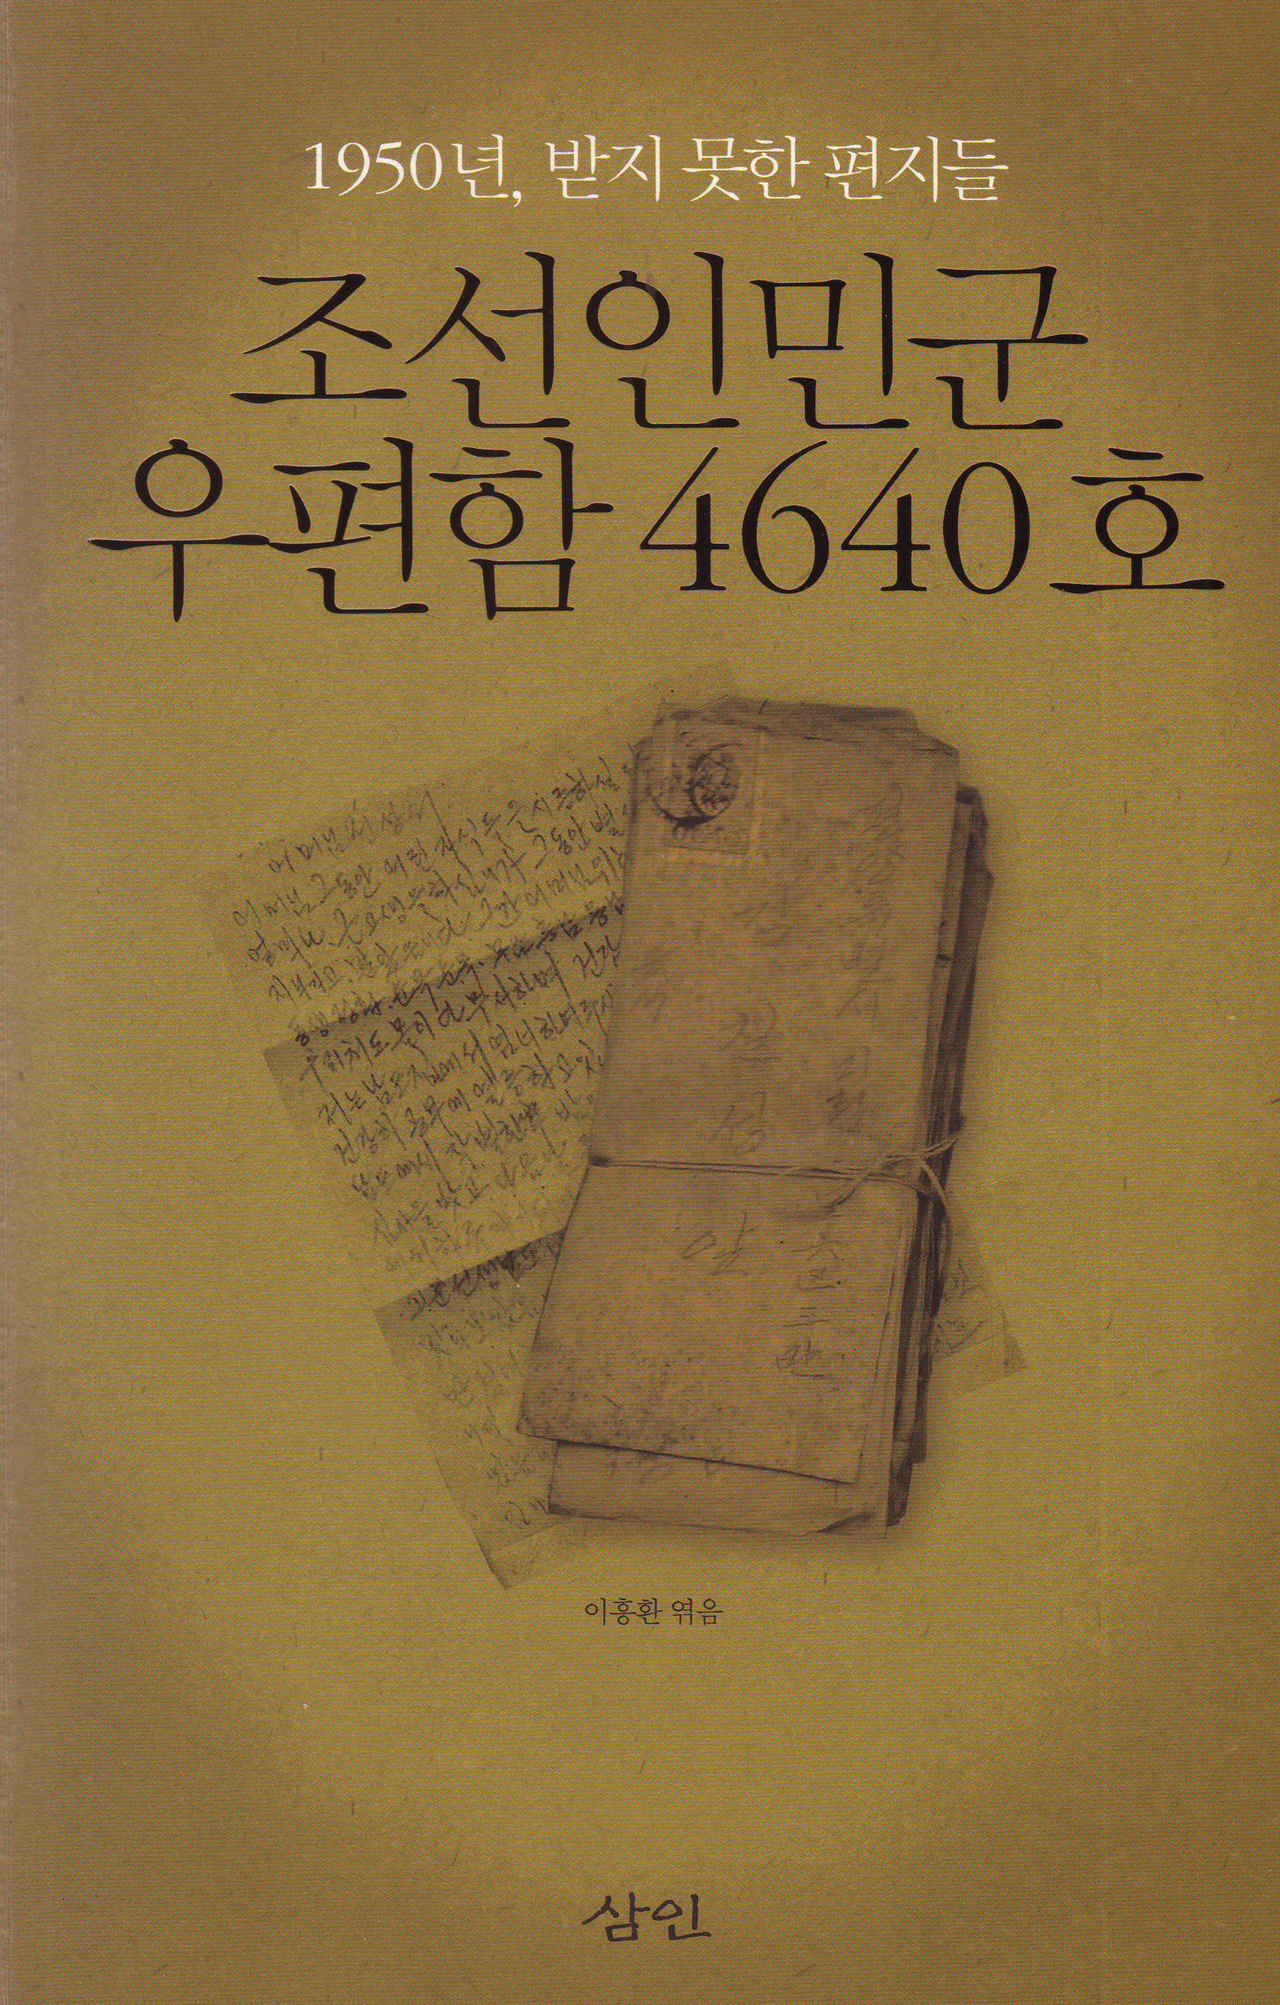 1950년, 받지 못한 편지들 <조선인민군 우편함 4640호>